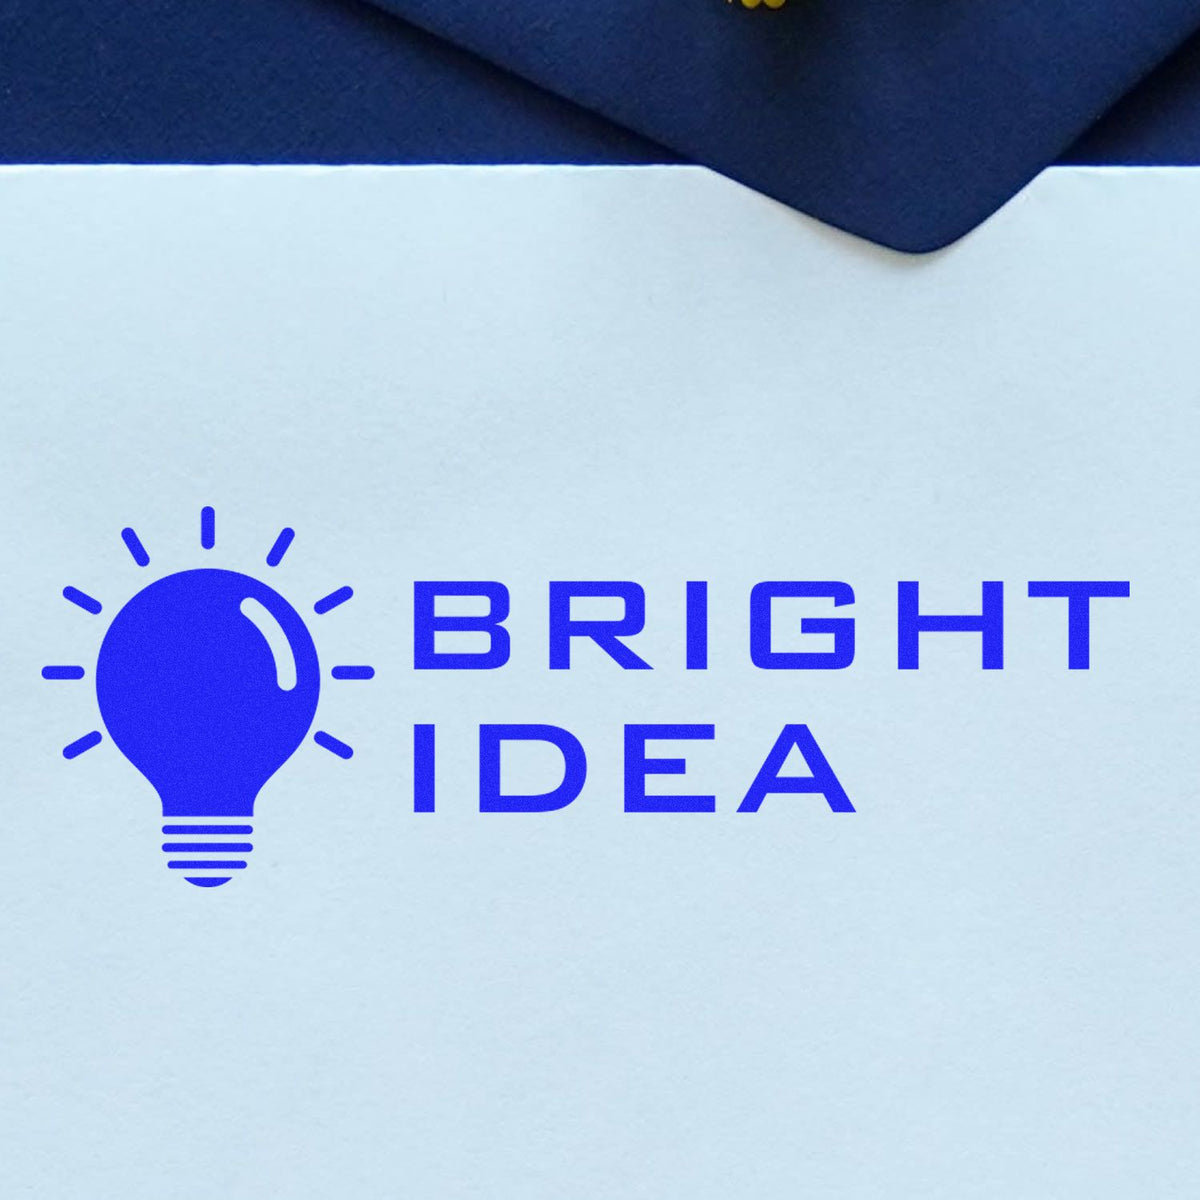 Bright Idea Rubber Stamp In Use Photo